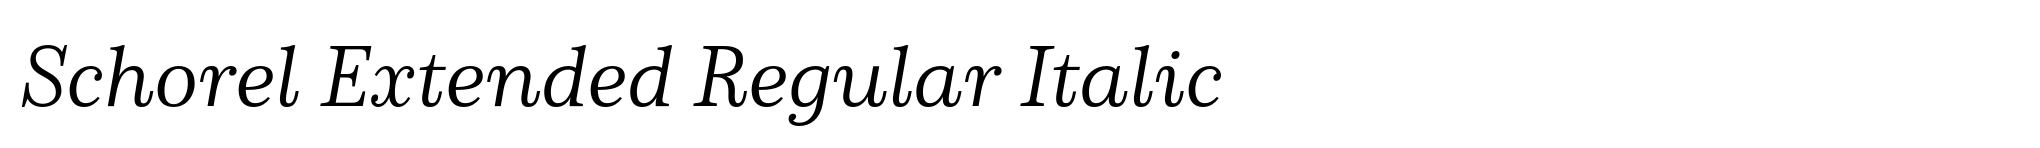 Schorel Extended Regular Italic image